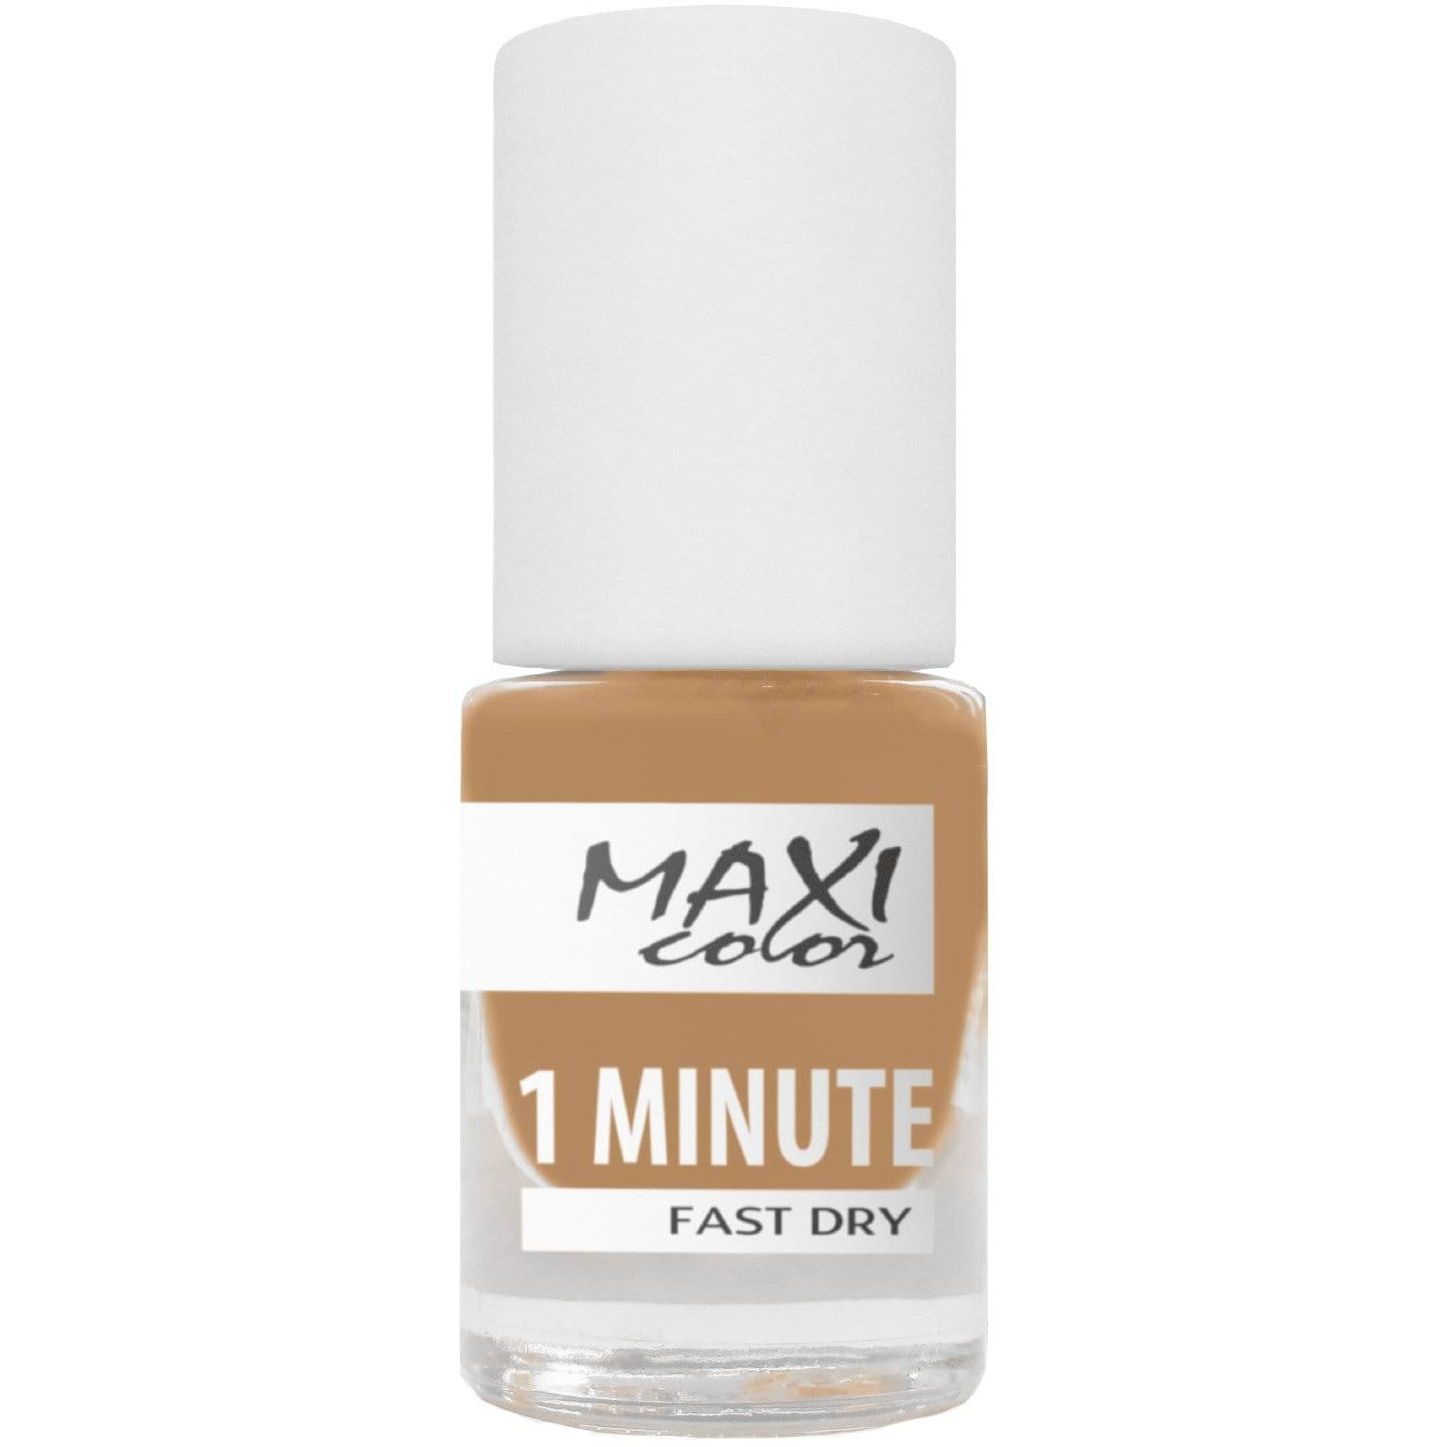 Лак для ногтей Maxi Color 1 Minute Fast Dry тон 029, 6 мл - фото 1